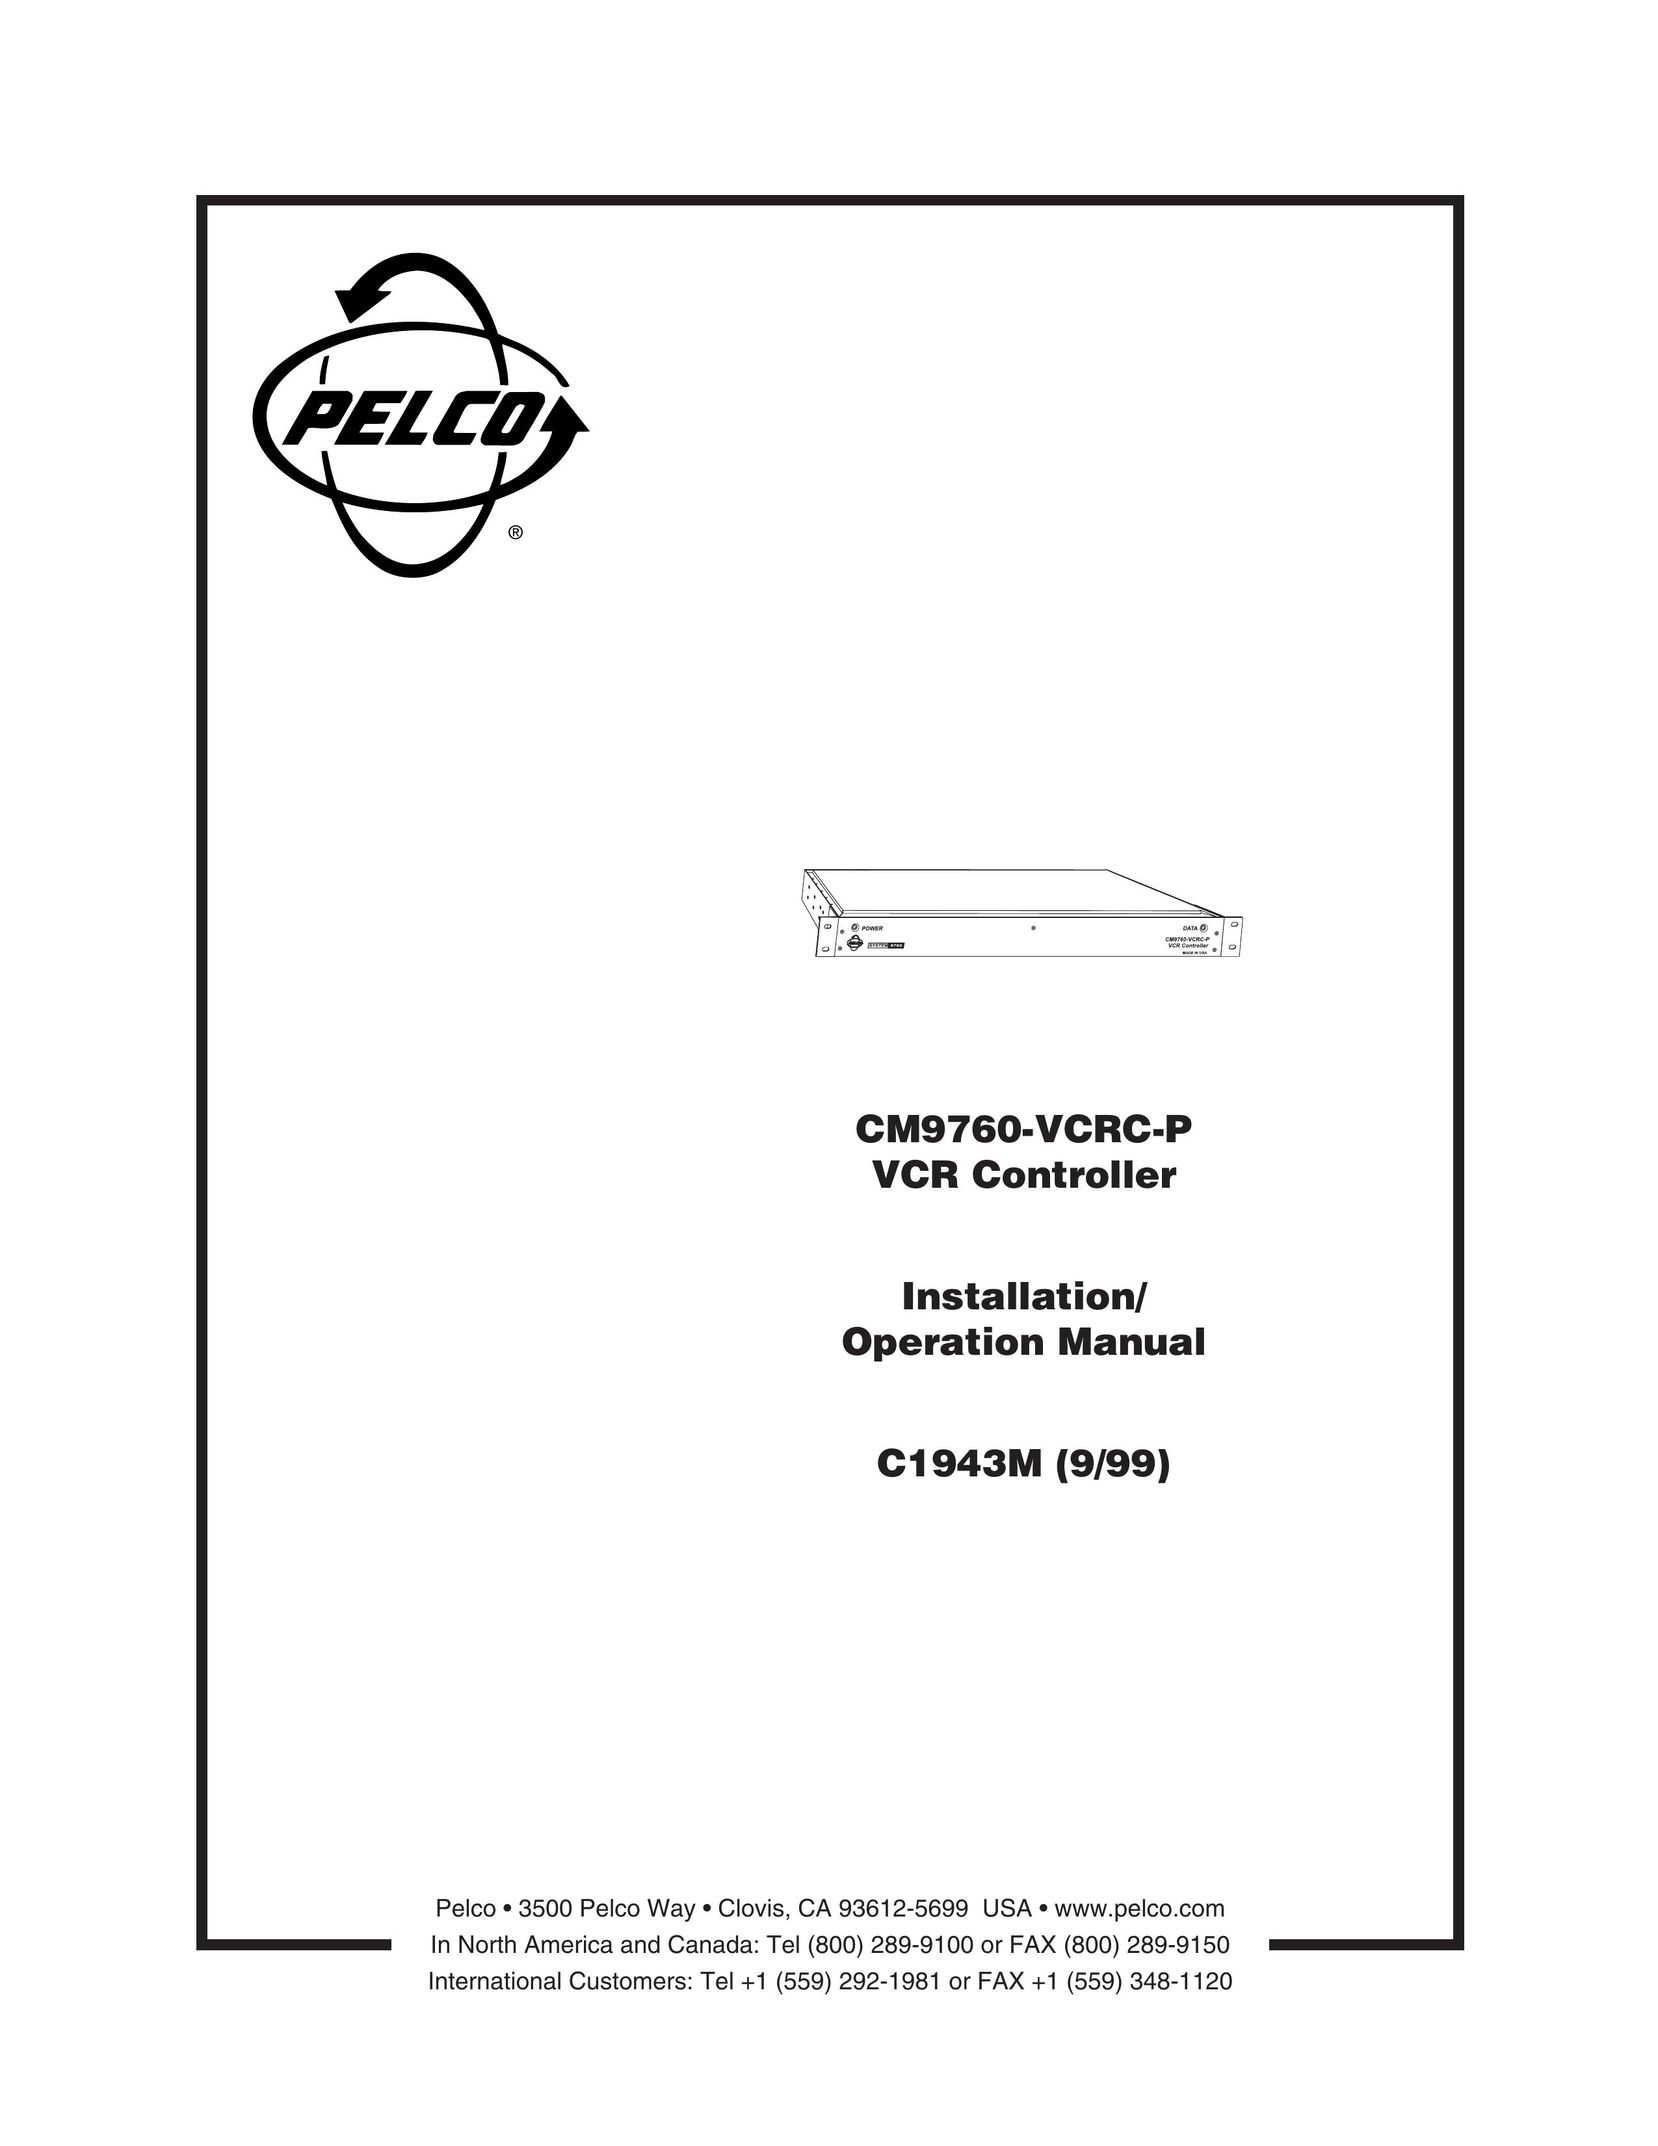 Pelco c1943m VCR User Manual